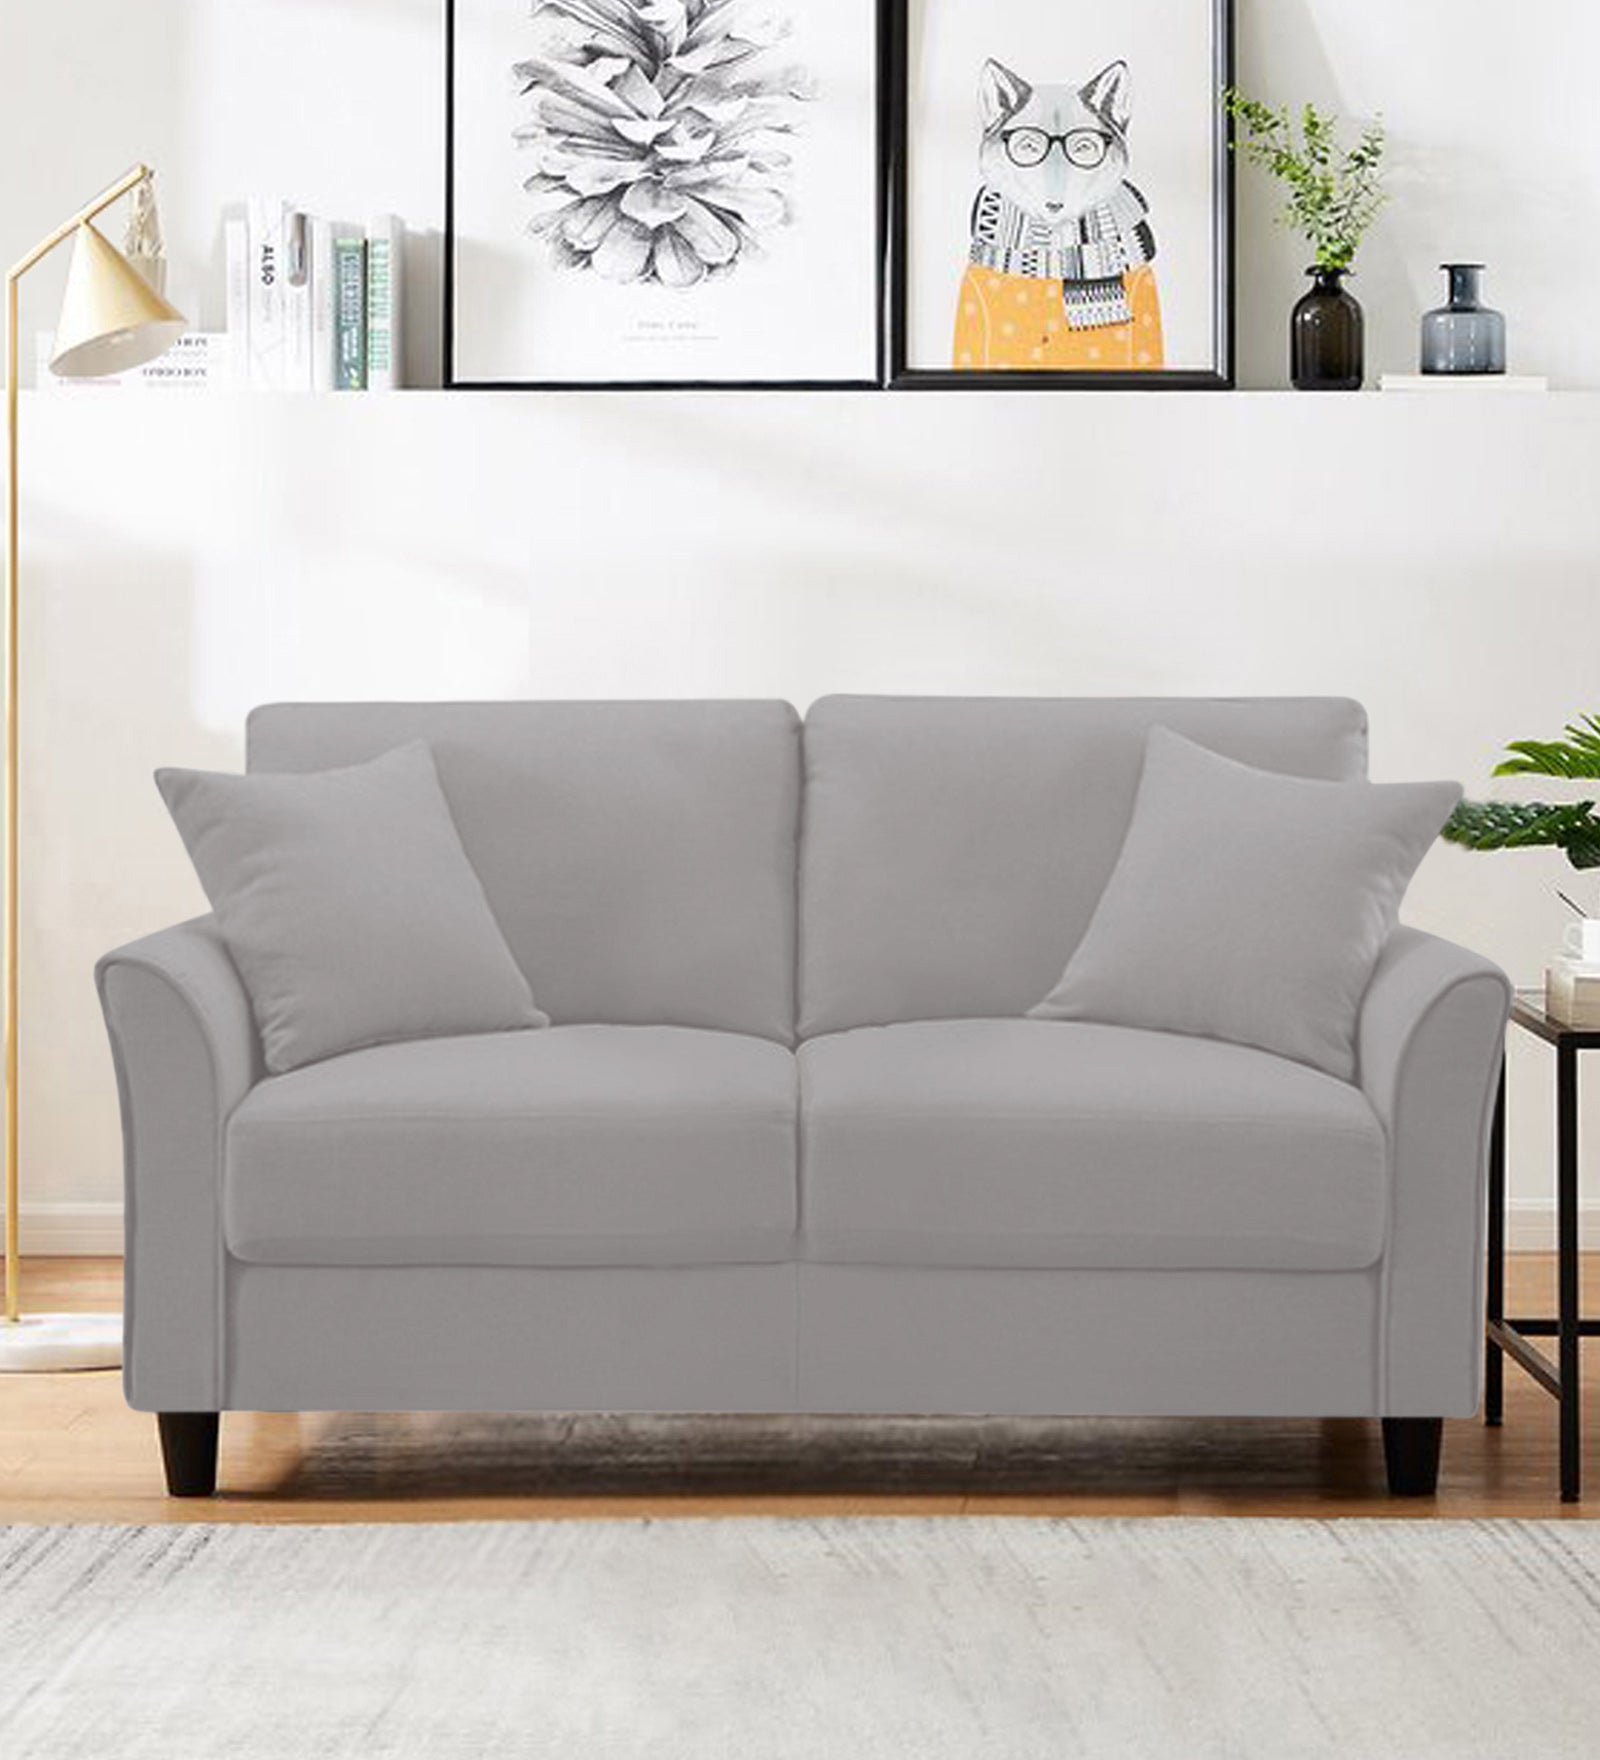 Daroo Velvet 2 Seater Sofa In light grey Colour